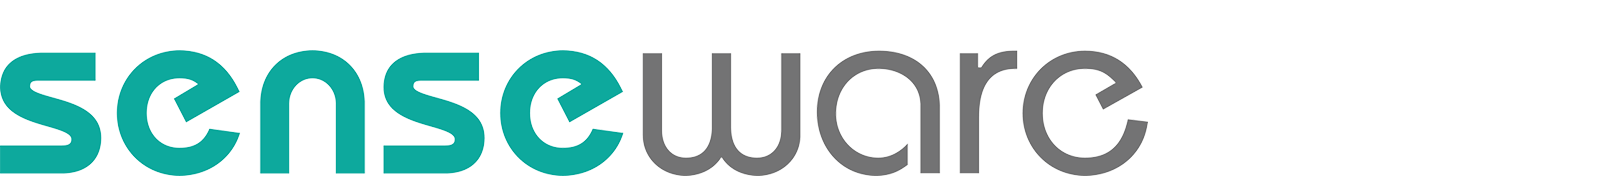 senseware logo